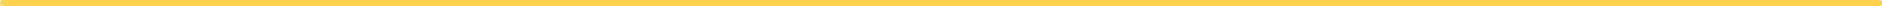 Linea color amarillo